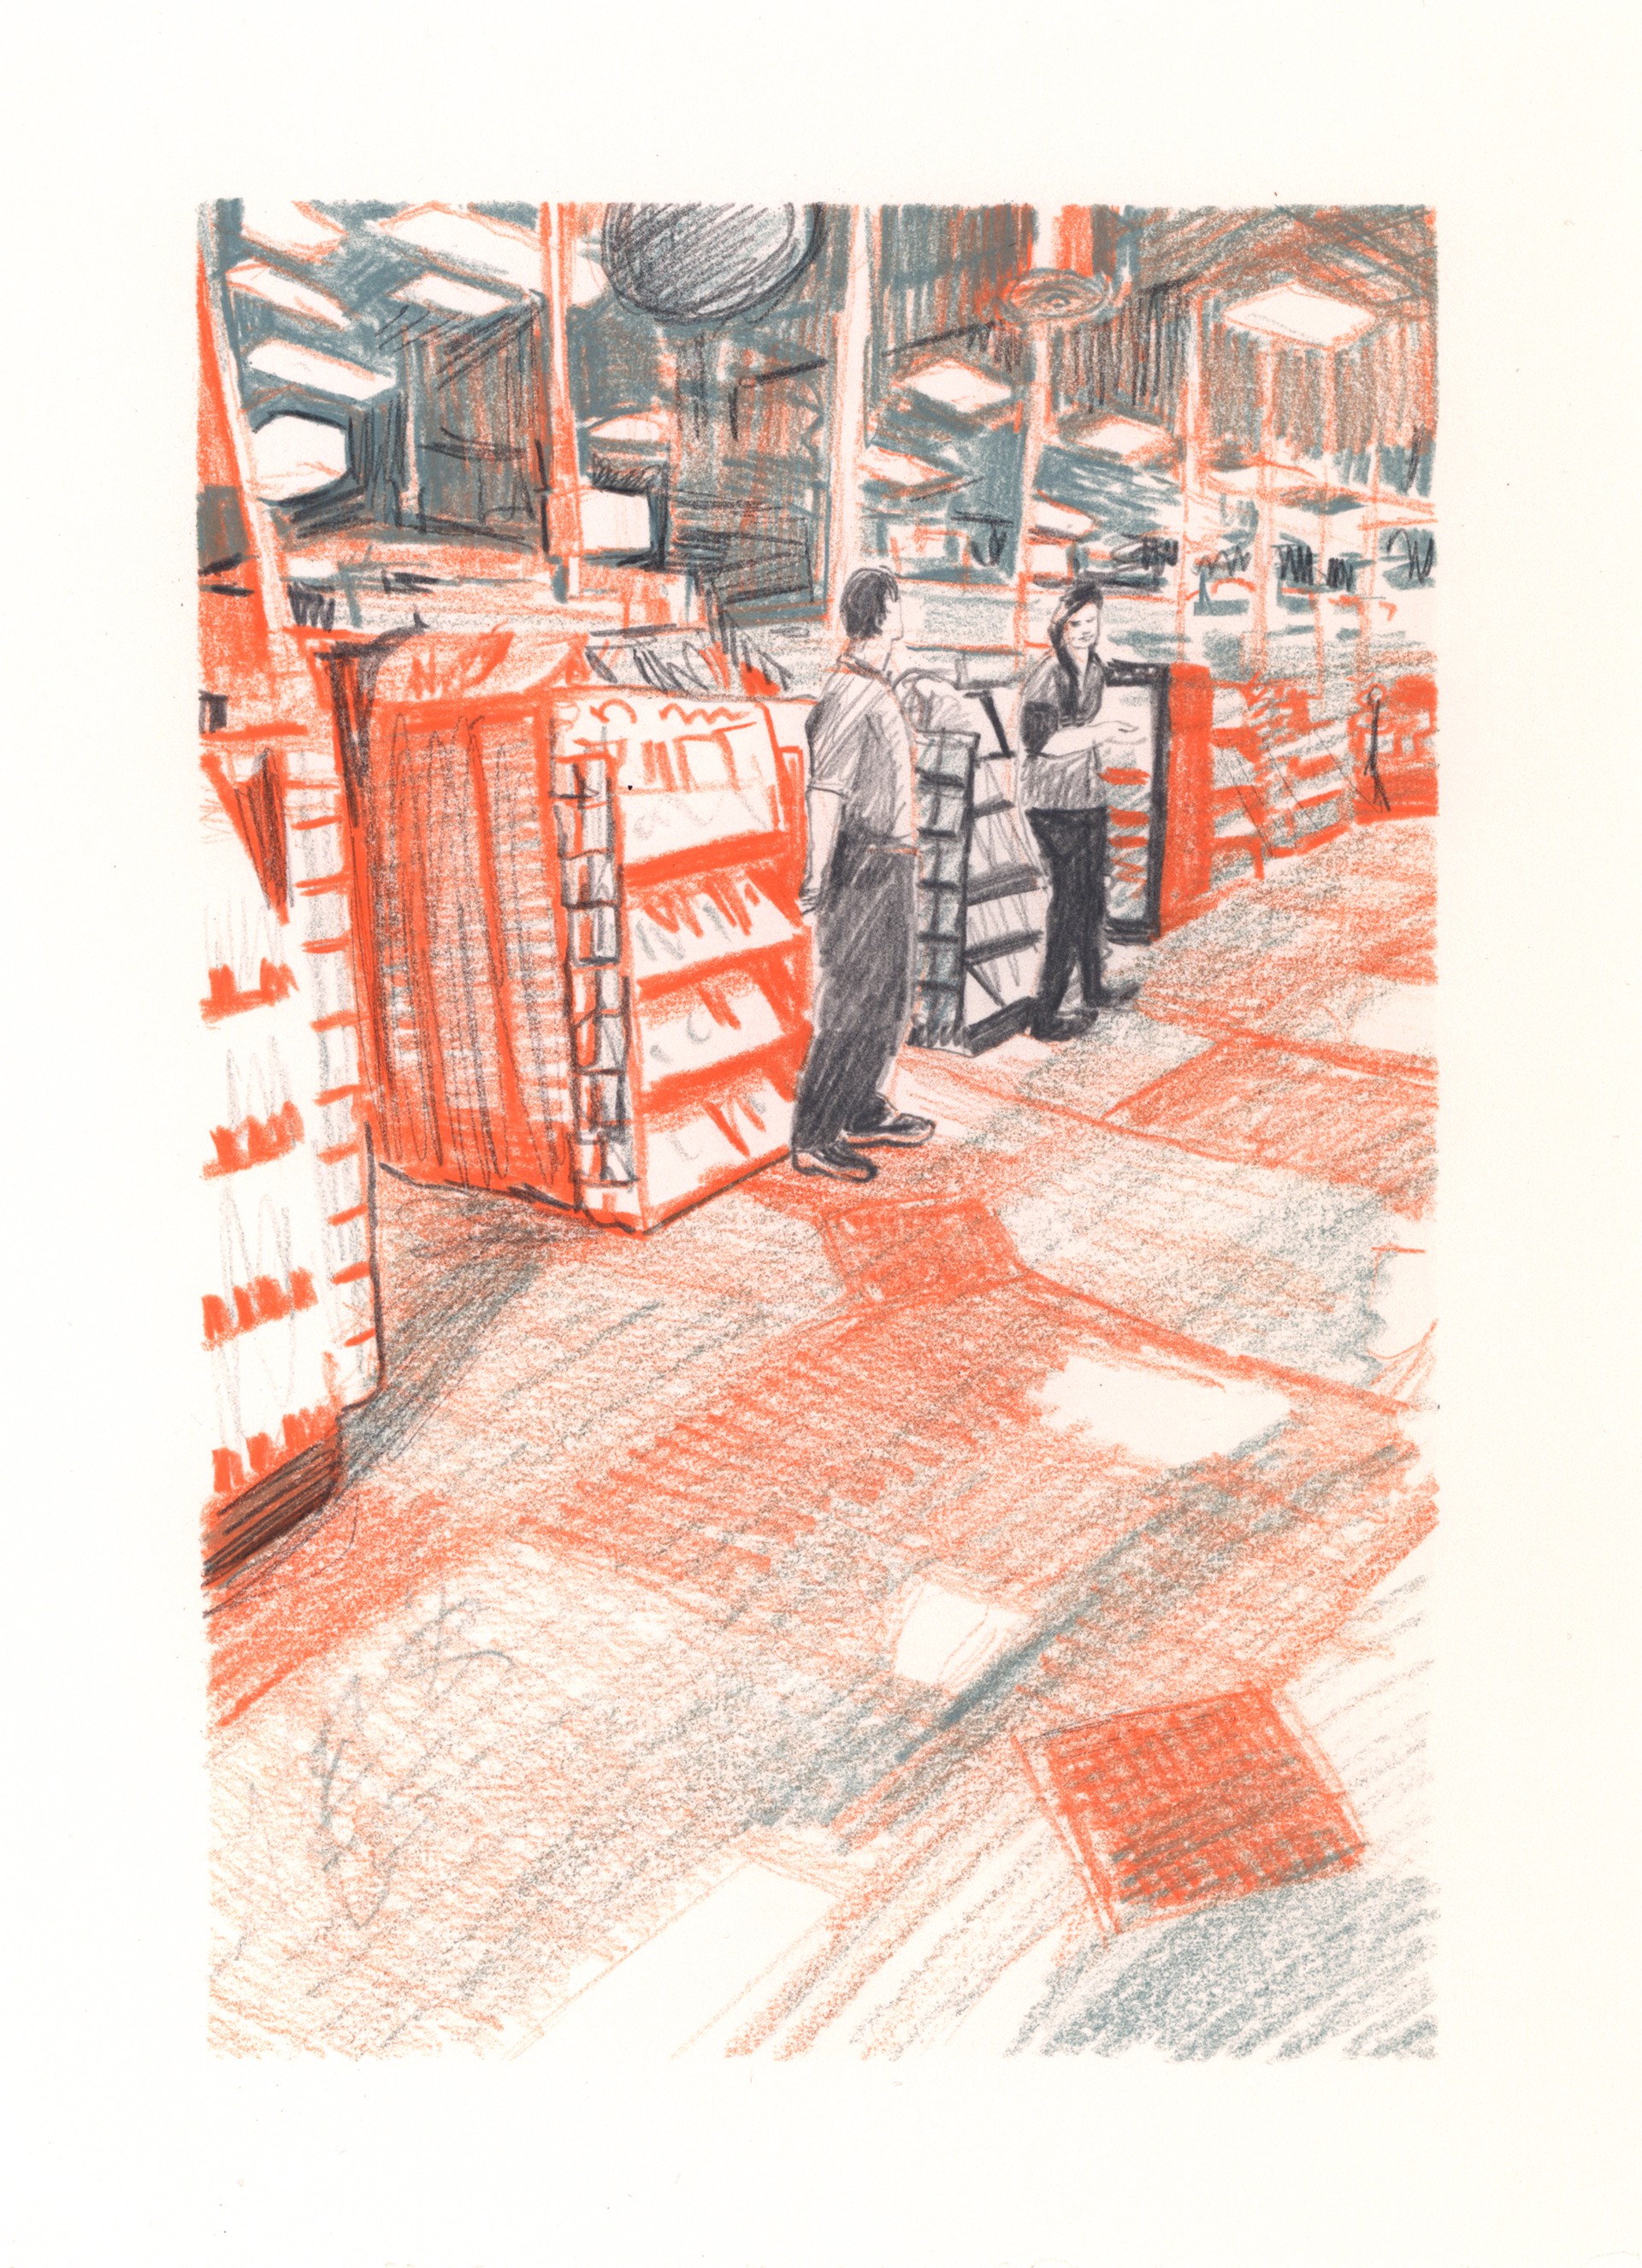 Marketplace/Cashier #40 by Eilis Crean